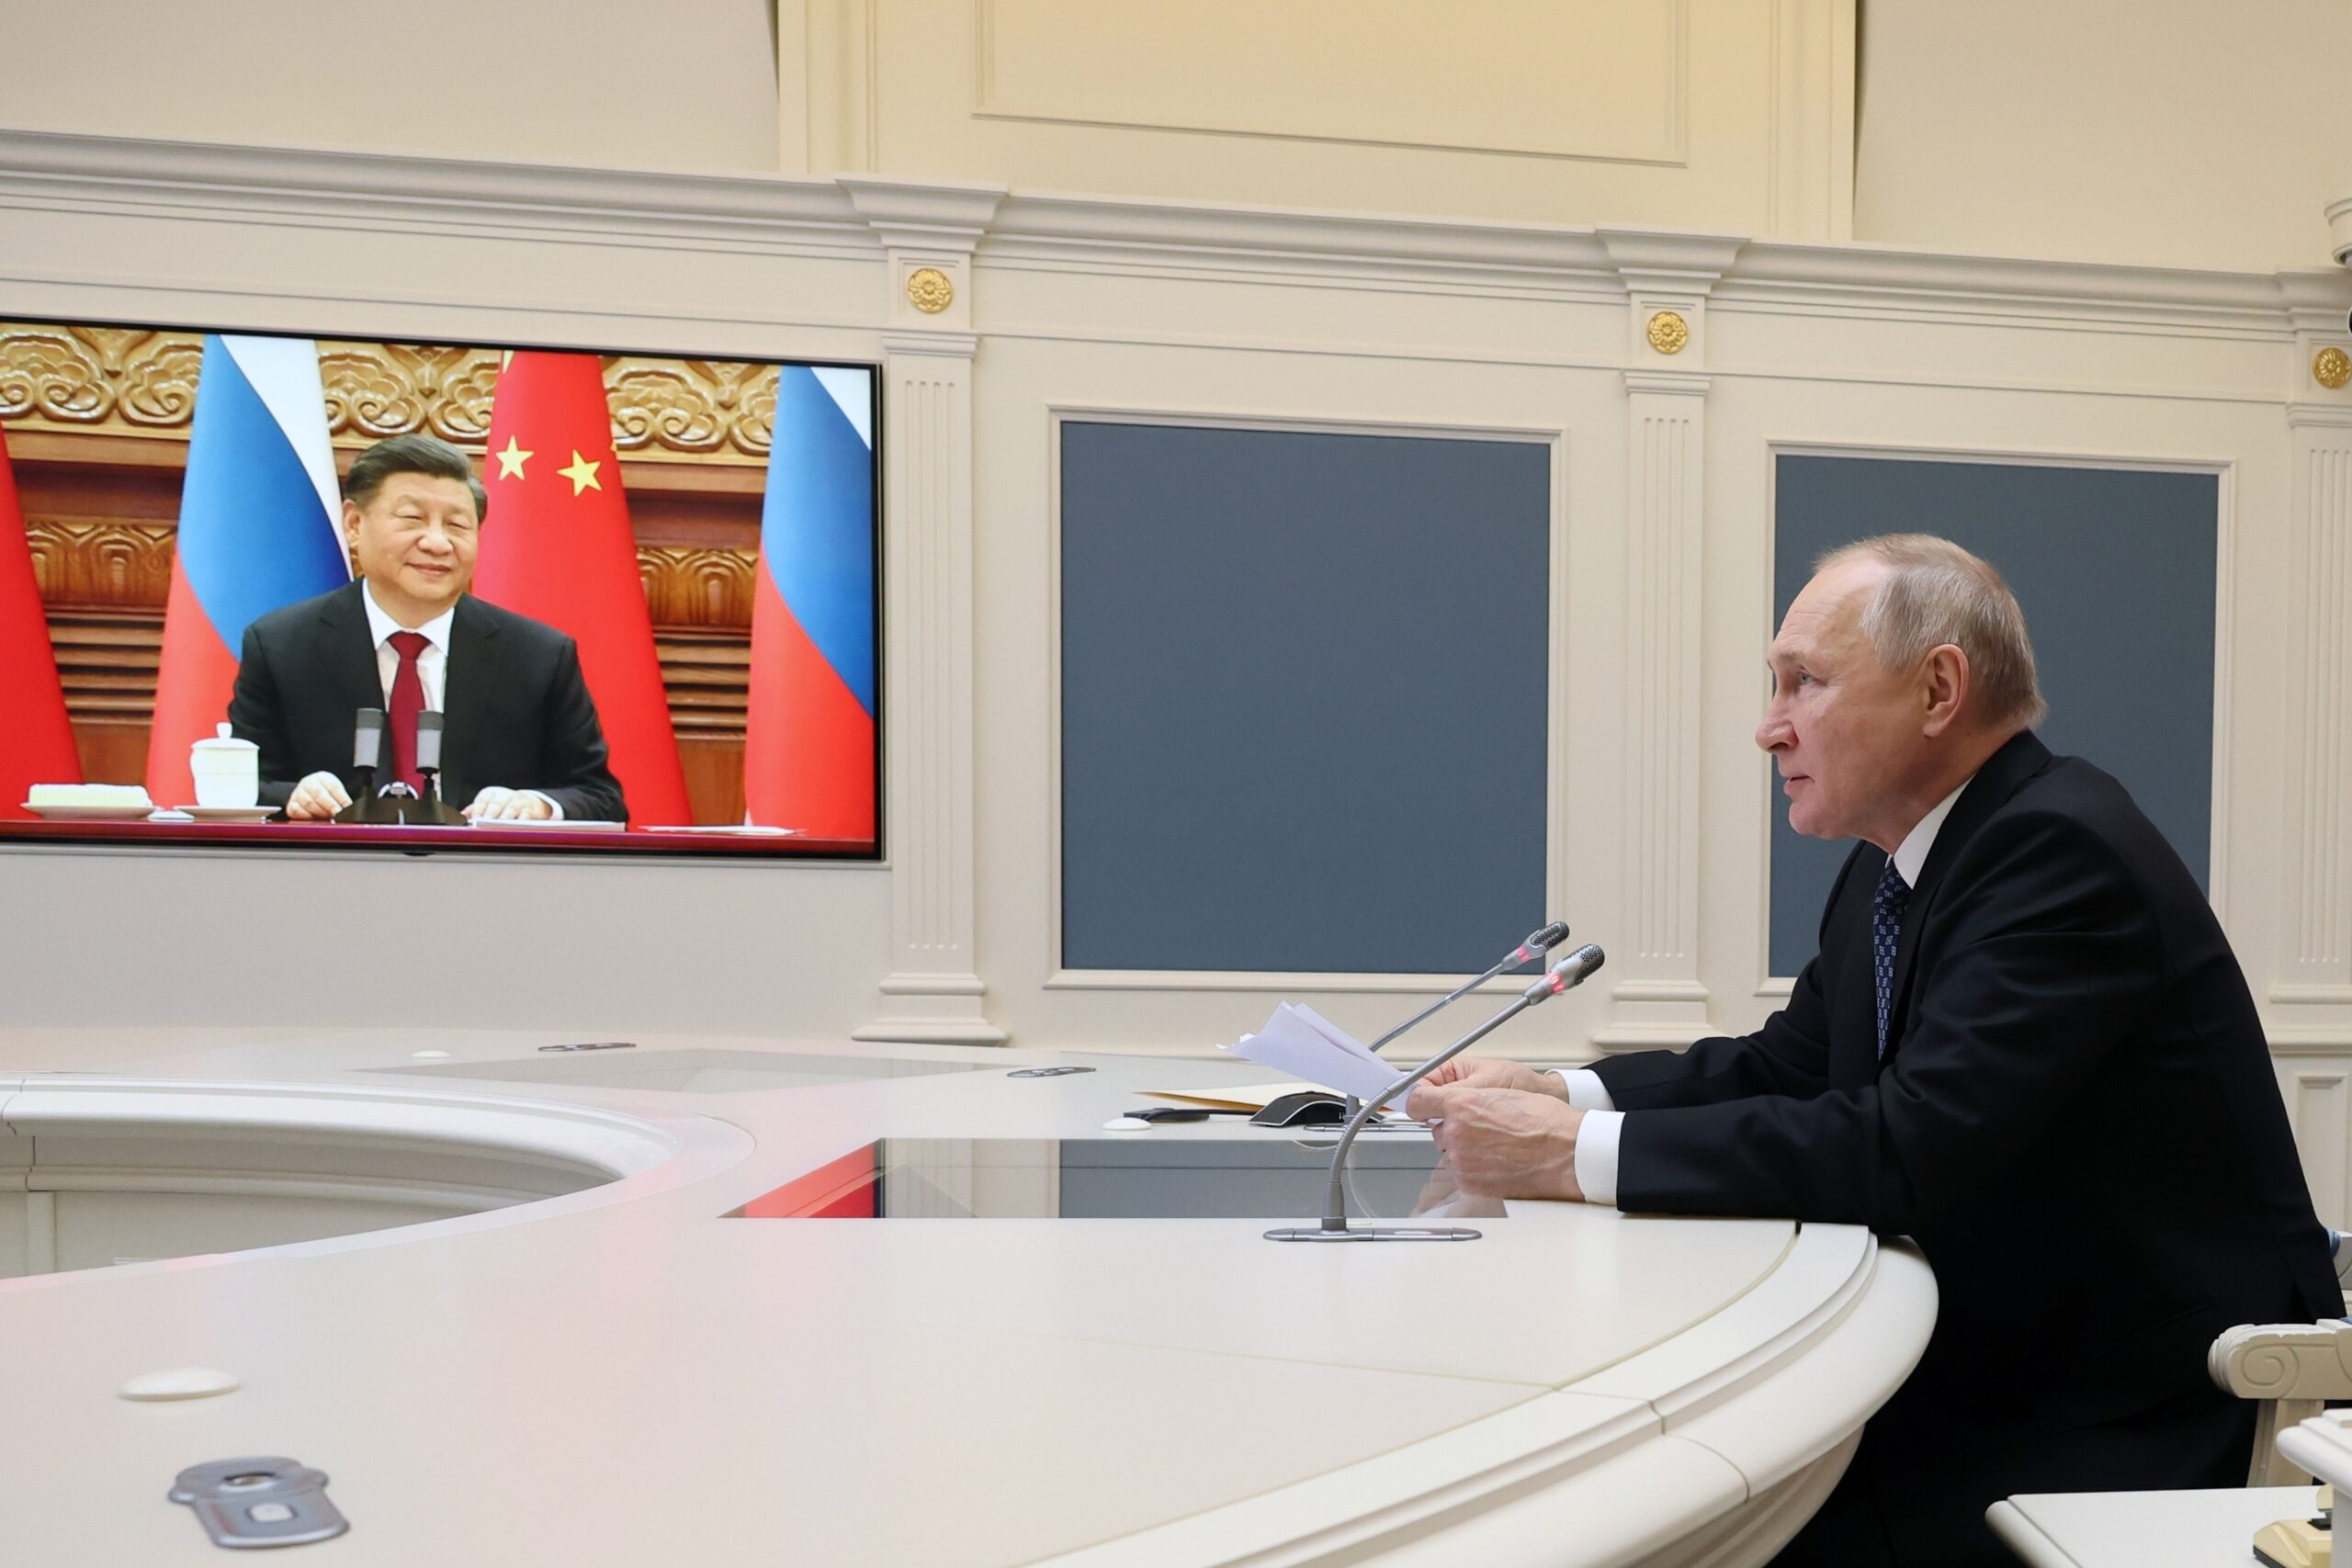 ΗΠΑ: Η Κίνα θα συνεχίσει να συνεργάζεται με τη Ρωσία και να εκφοβίζει τους αντιπάλους της